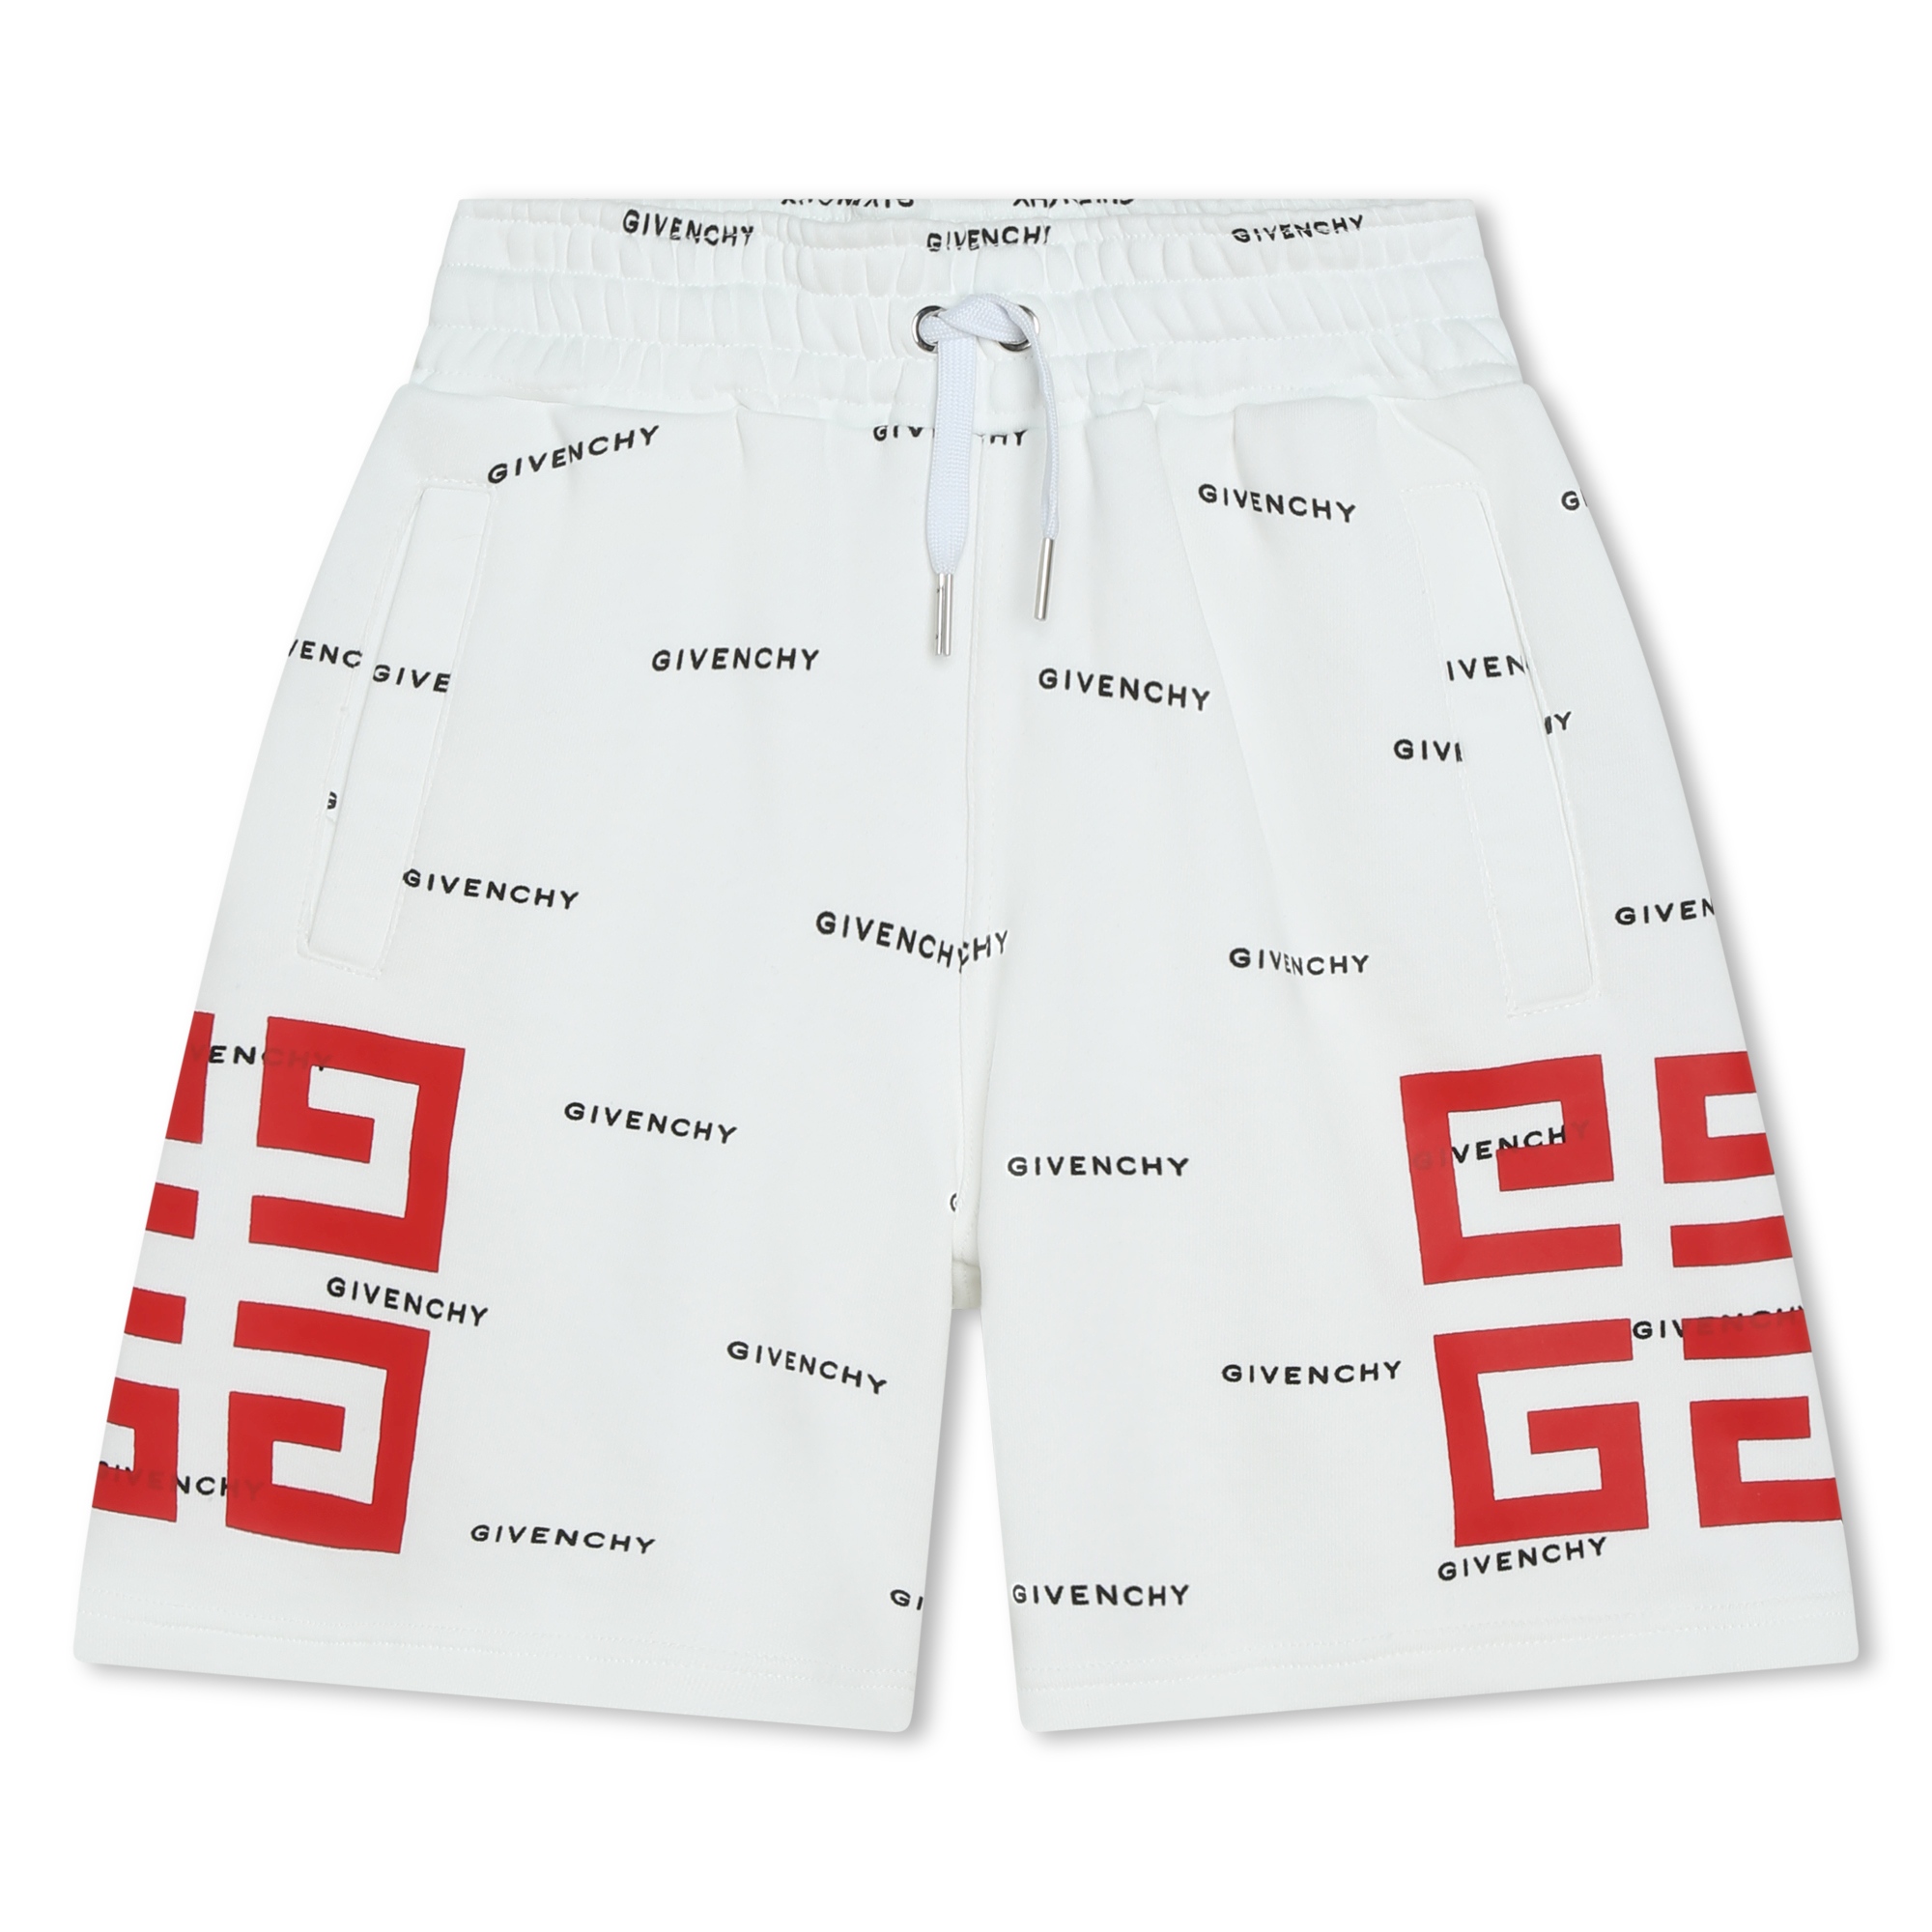 Bermuda-shorts aus molton GIVENCHY Für JUNGE